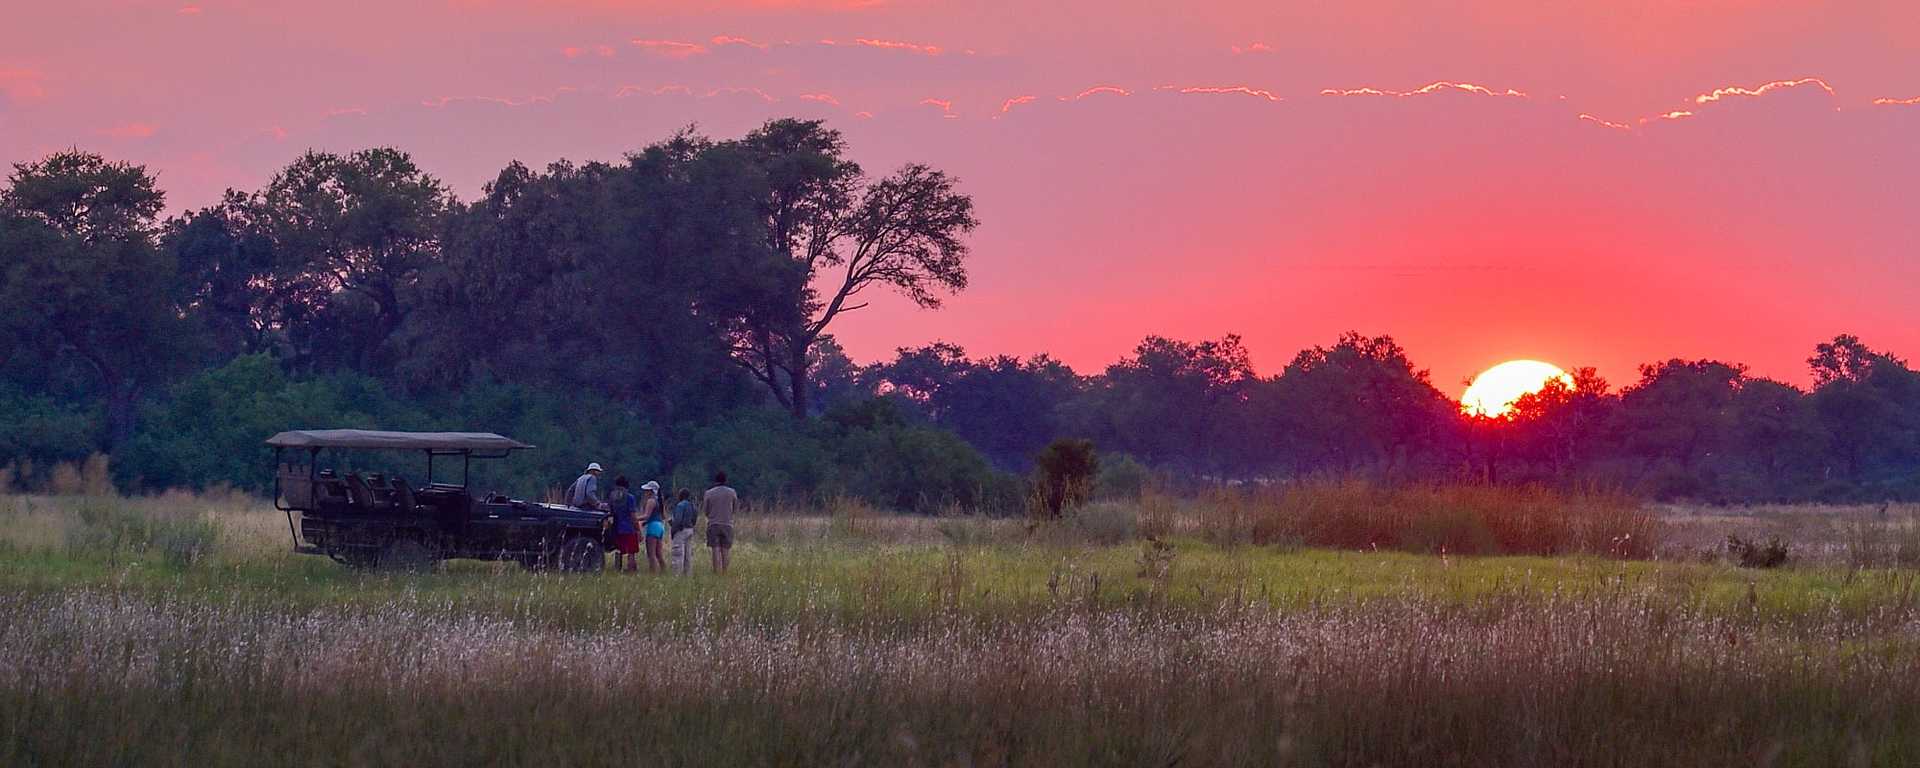 Family on safari in the Okavango Delta, Botswana